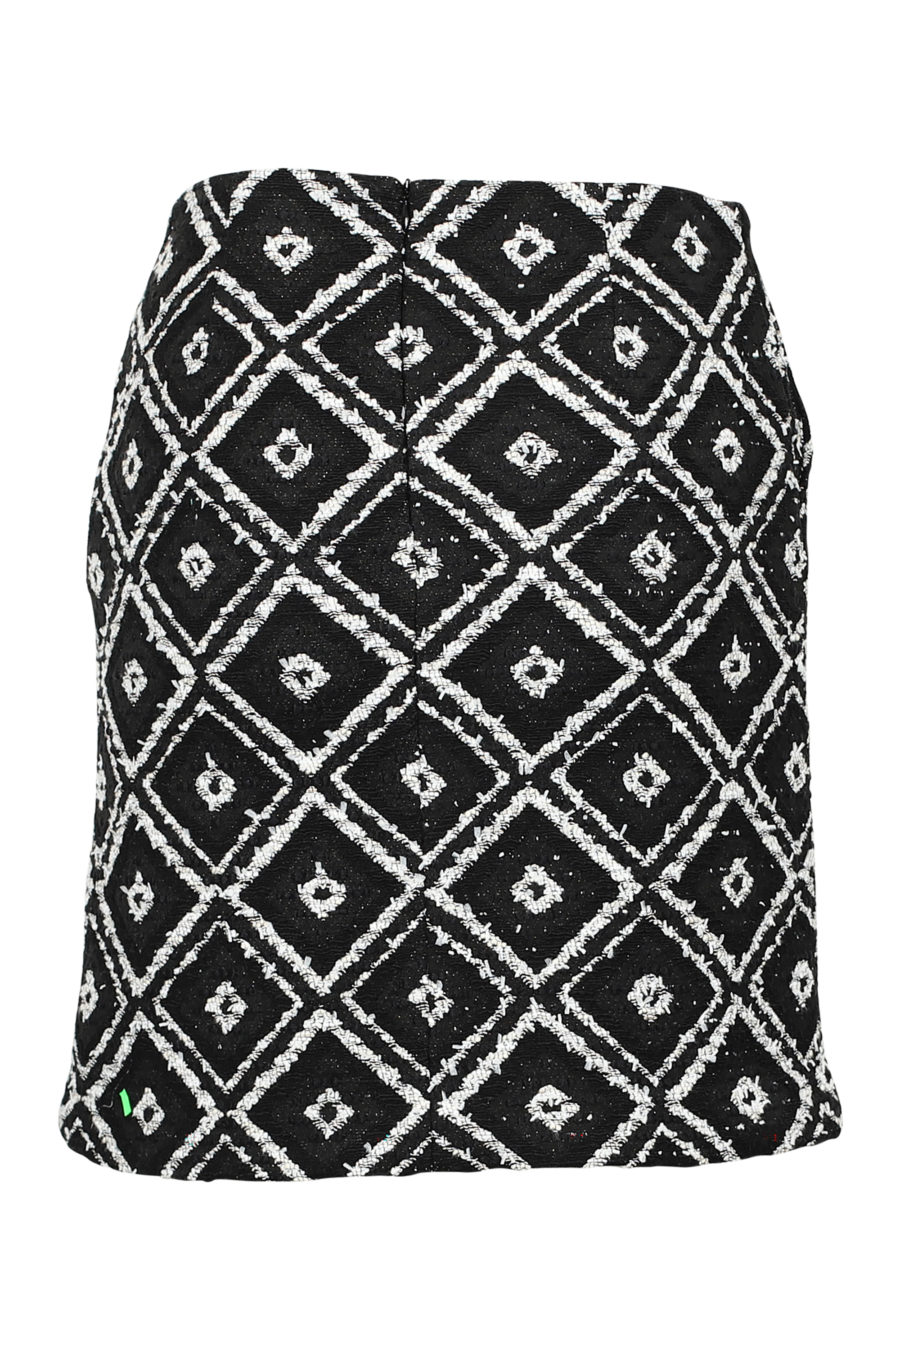 Falda negra y blanca geométrica "Boucle" - IMG 3180